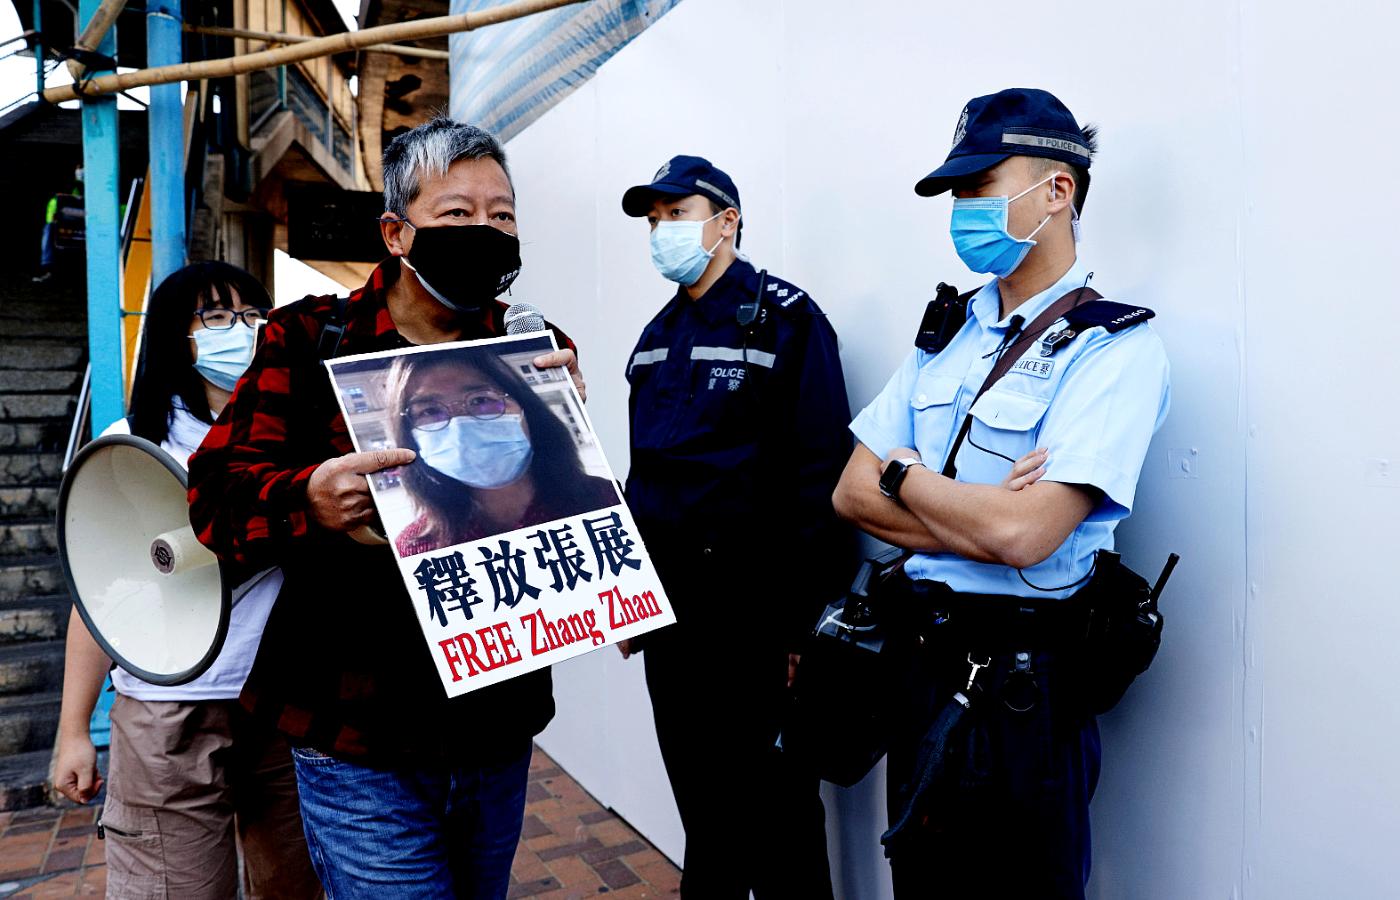 Szanghajski sąd skazał 37-letnią dziennikarkę obywatelską Zhang Zhan na cztery lata pozbawienia wolności. Zhang informowała o początkach epidemii SARS-CoV-2 w Wuhanie.